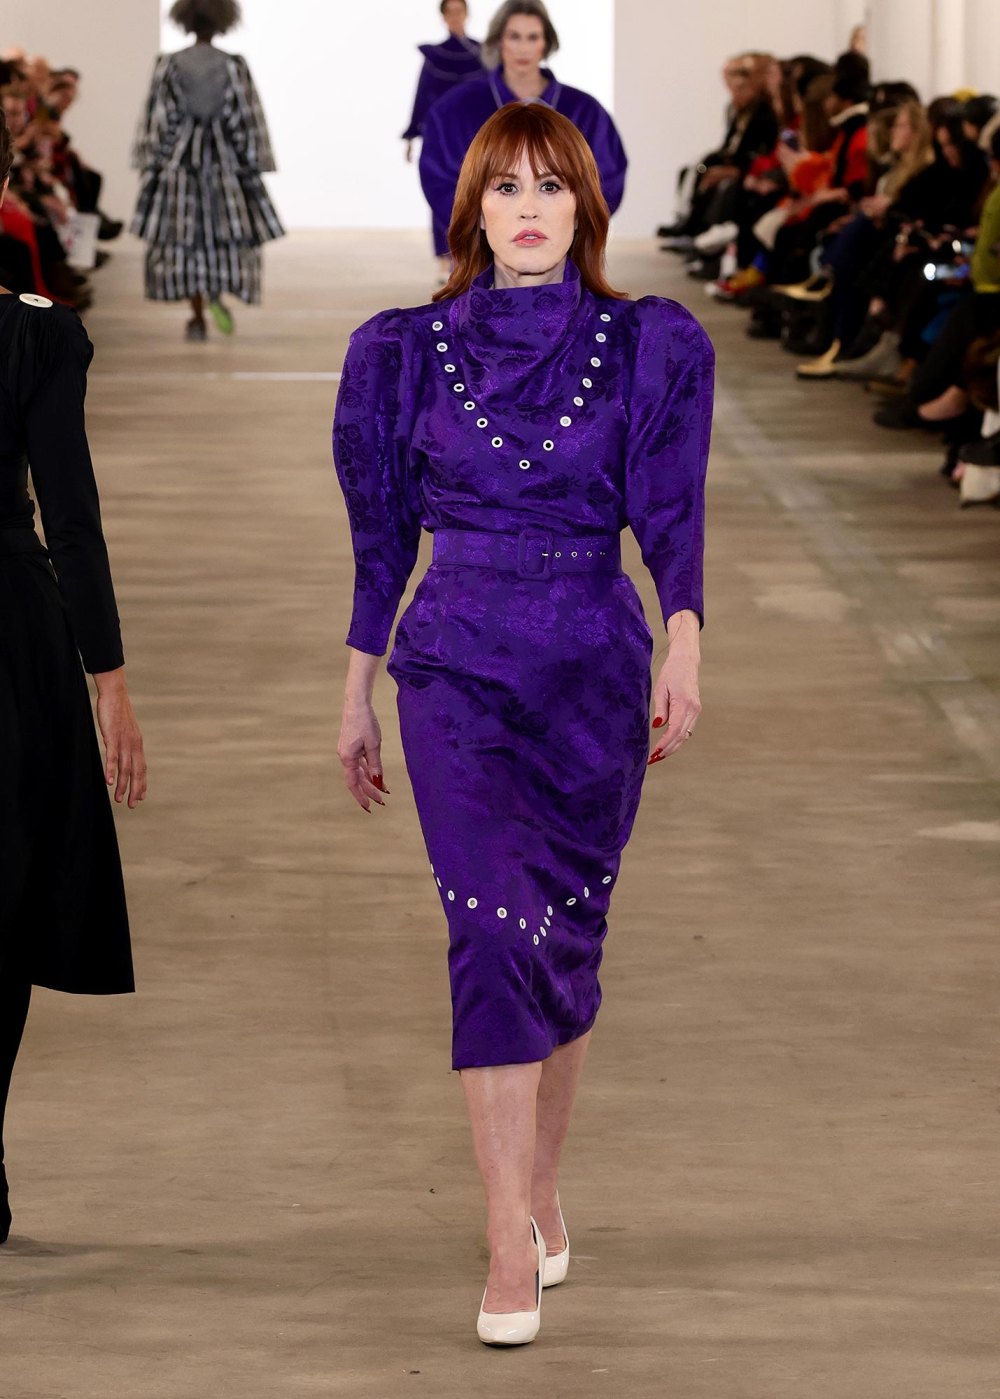 Molly Ringwald Transforms Into a Bathsheva Runway Model at New York Fashion Week